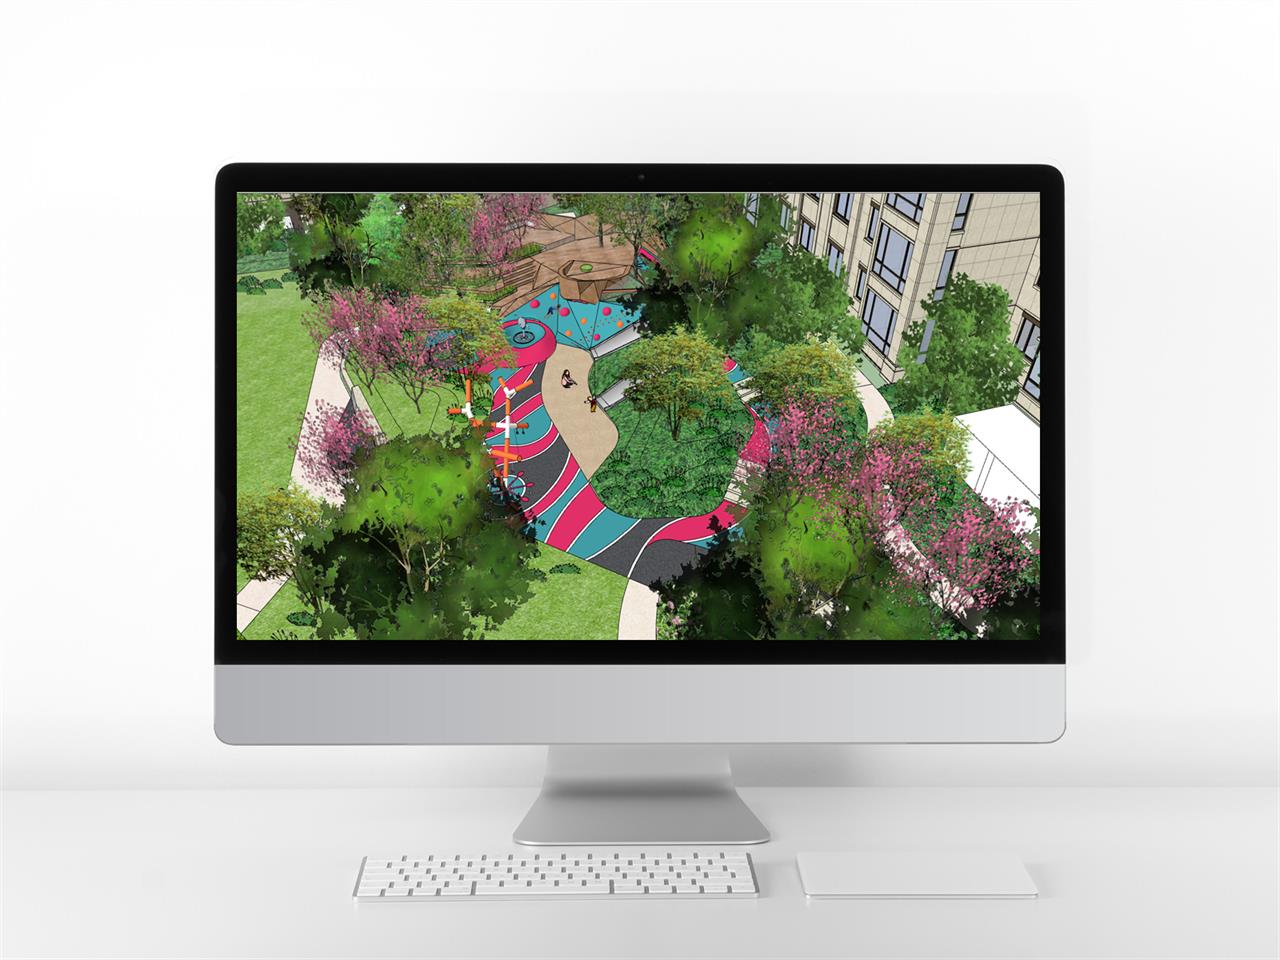 폼나는 공원광장 디자인 웹툰배경 샘플 사이트 미리보기